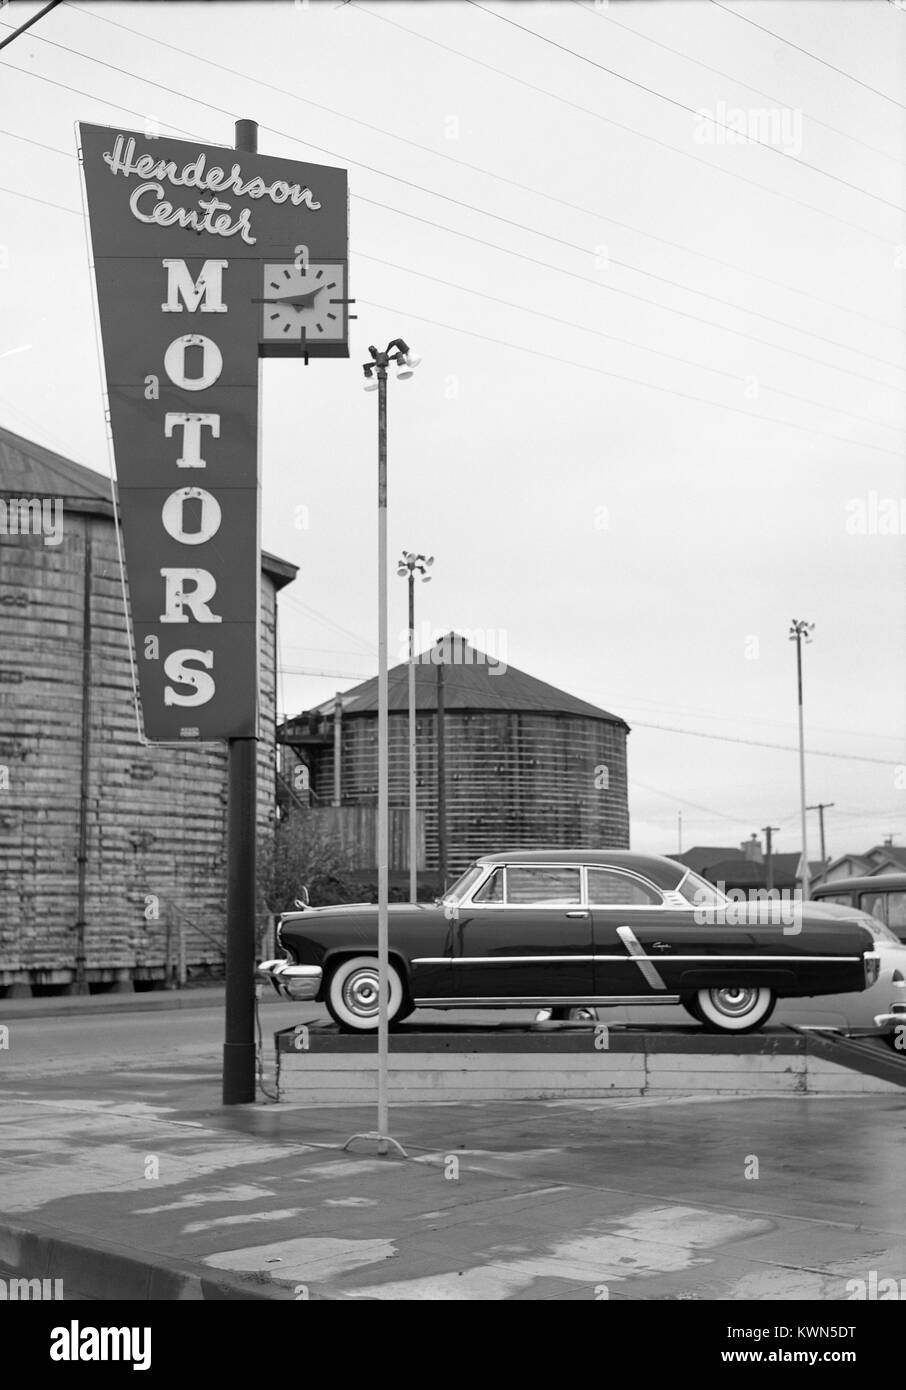 La segnaletica per il centro di Henderson motori, una concessionaria auto a Eureka, California, con silos e un allora nuovo Lincoln automobile Capri visibile, Eureka, California, 1950. Foto Stock